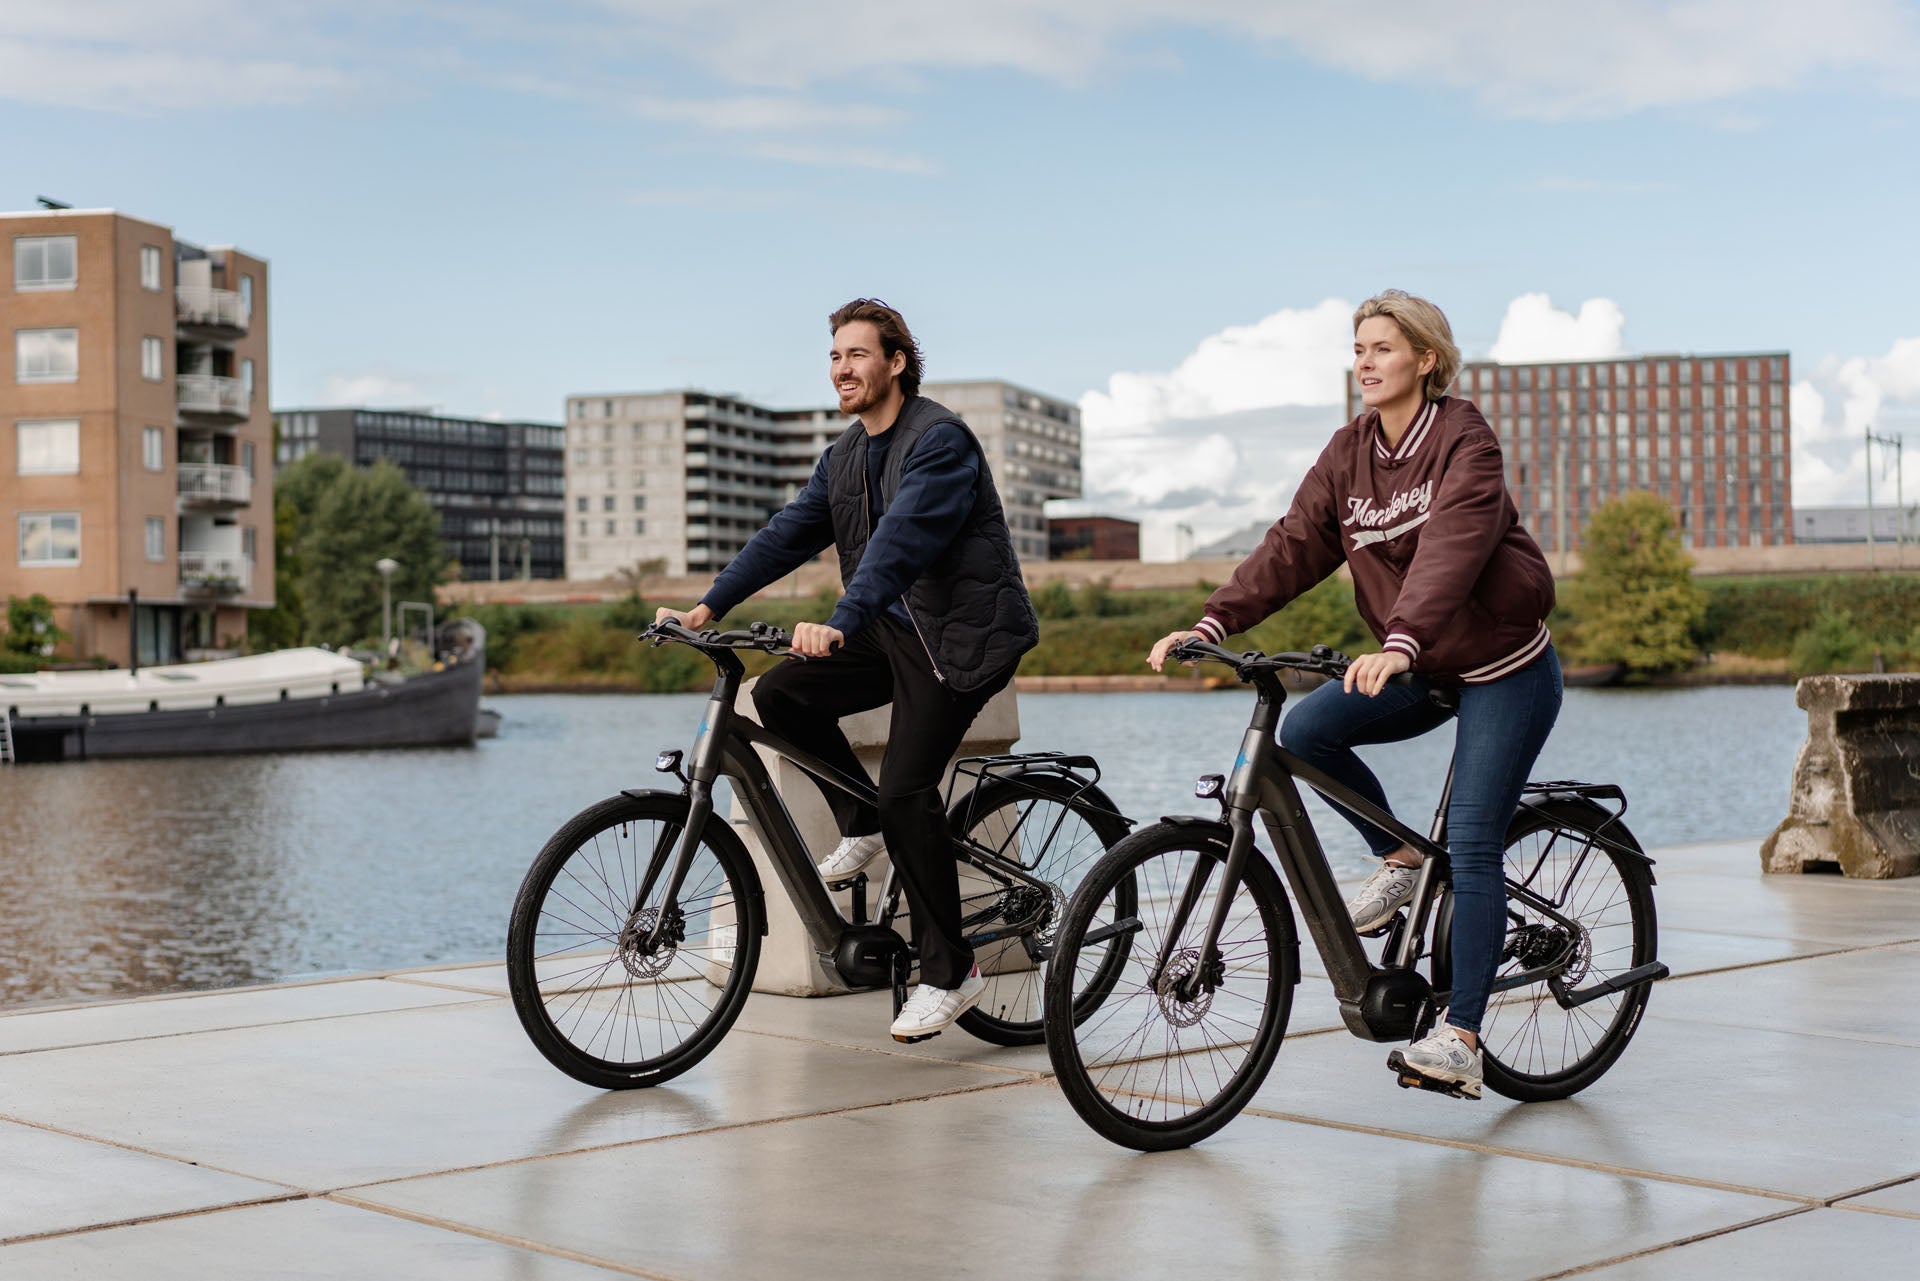 Het perfecte samenspel: het unieke ontwerp van onze sportieve elektrische fiets